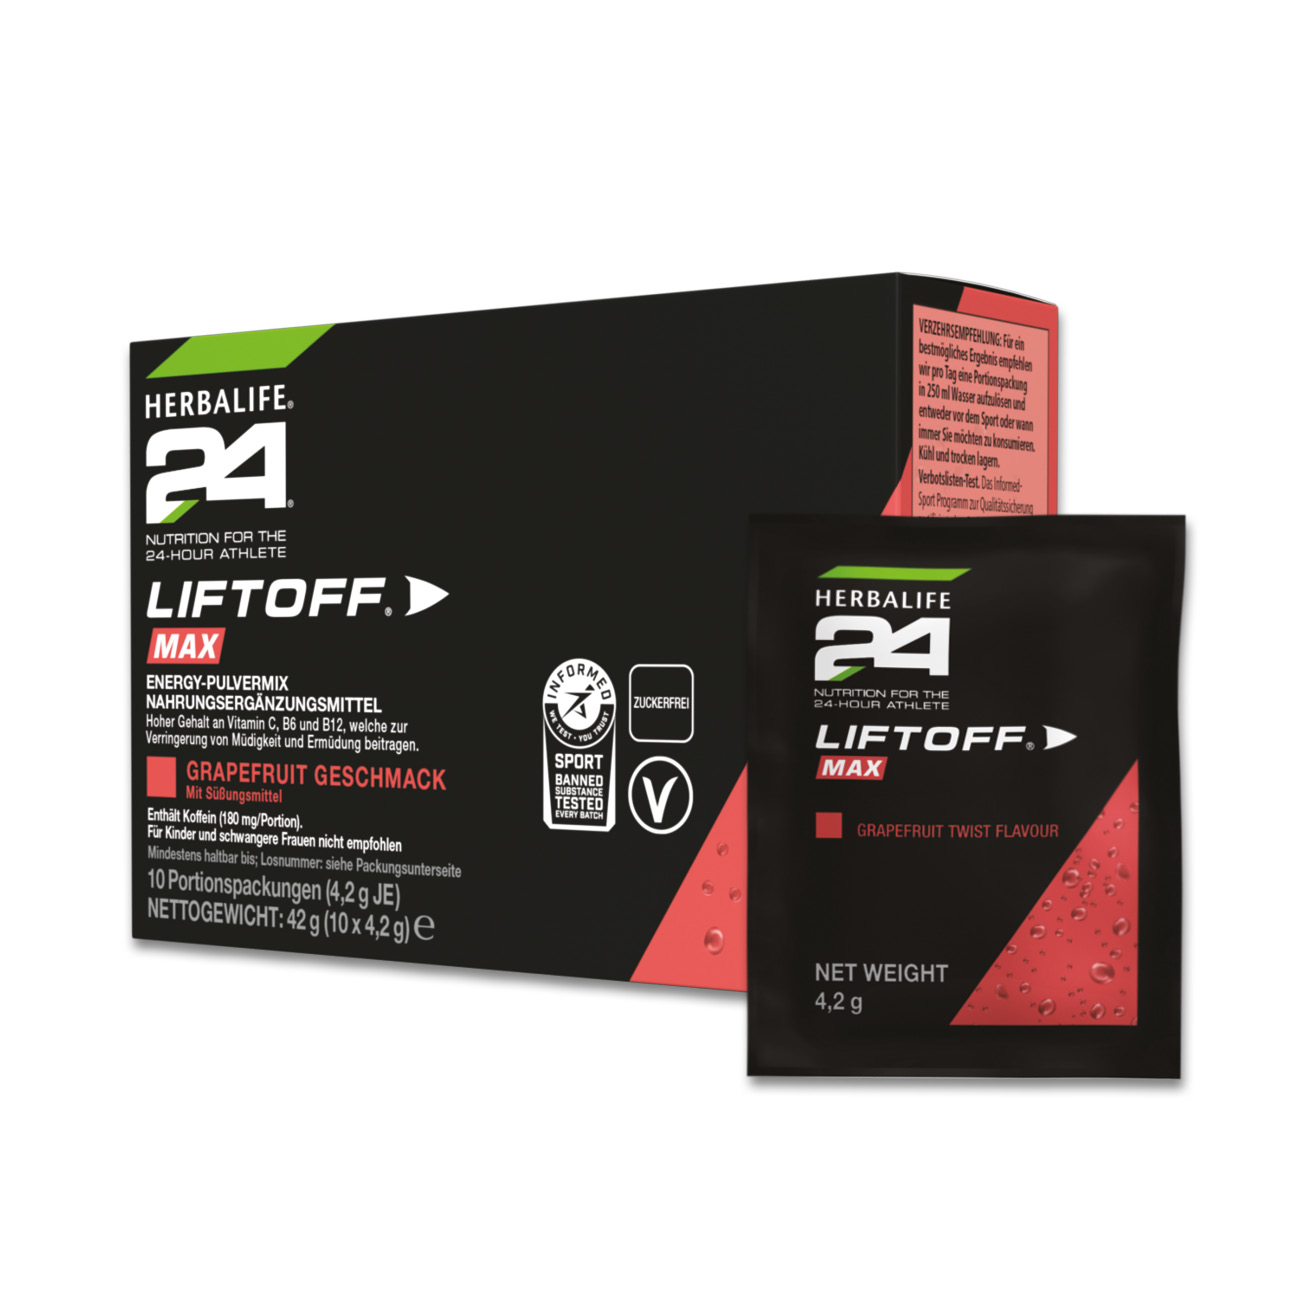 Herbalife24® LiftOff® Max ist als Karton mit 10 einzelnen Portionspackungen erhältlich und eignet sich so perfekt für unterwegs.